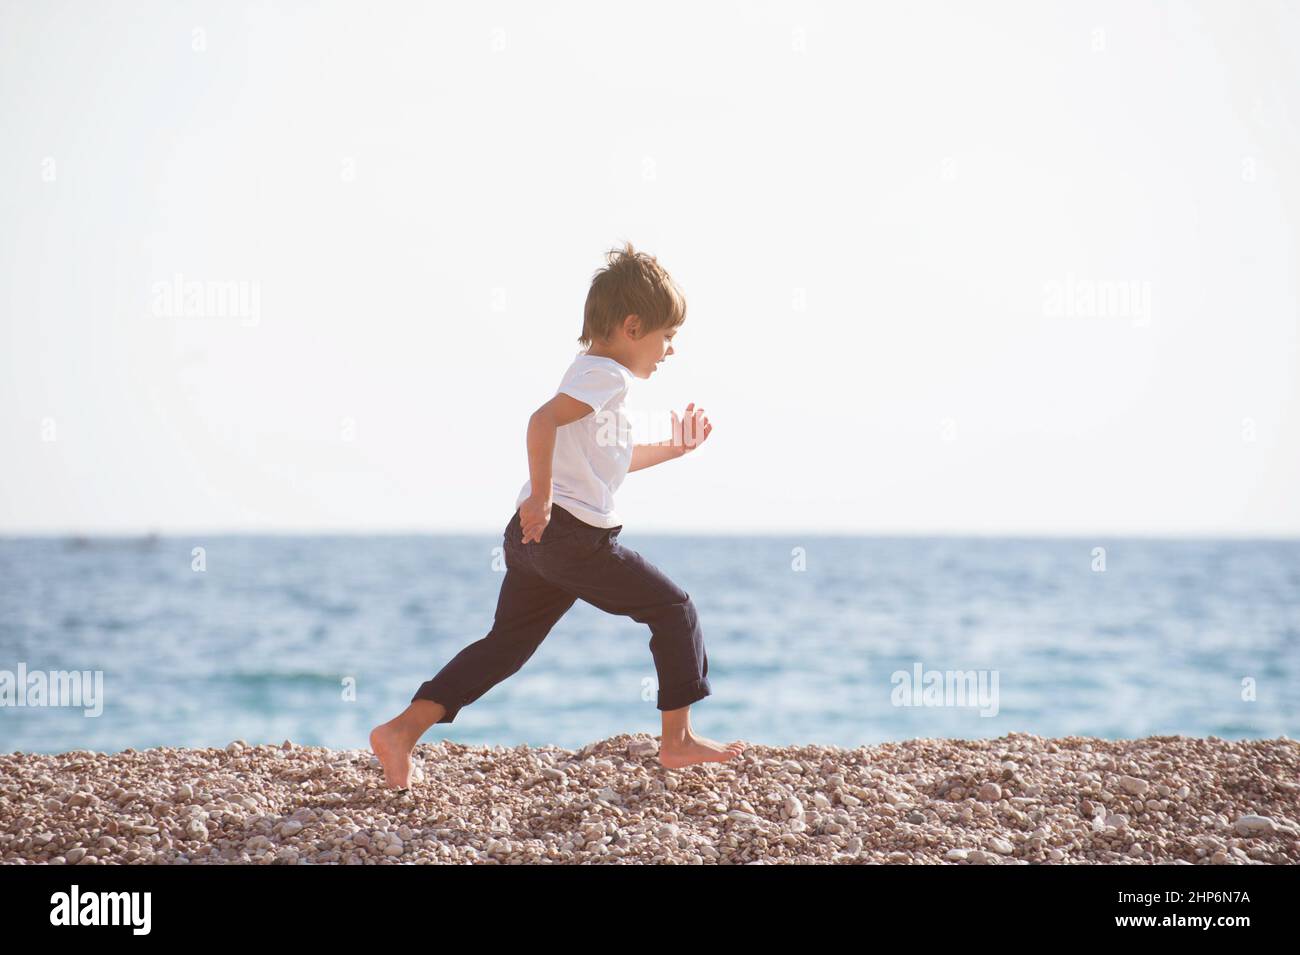 niño pequeño activo con jersey blanco y pantalones azules corriendo por la playa durante actividades deportivas al aire libre Foto de stock